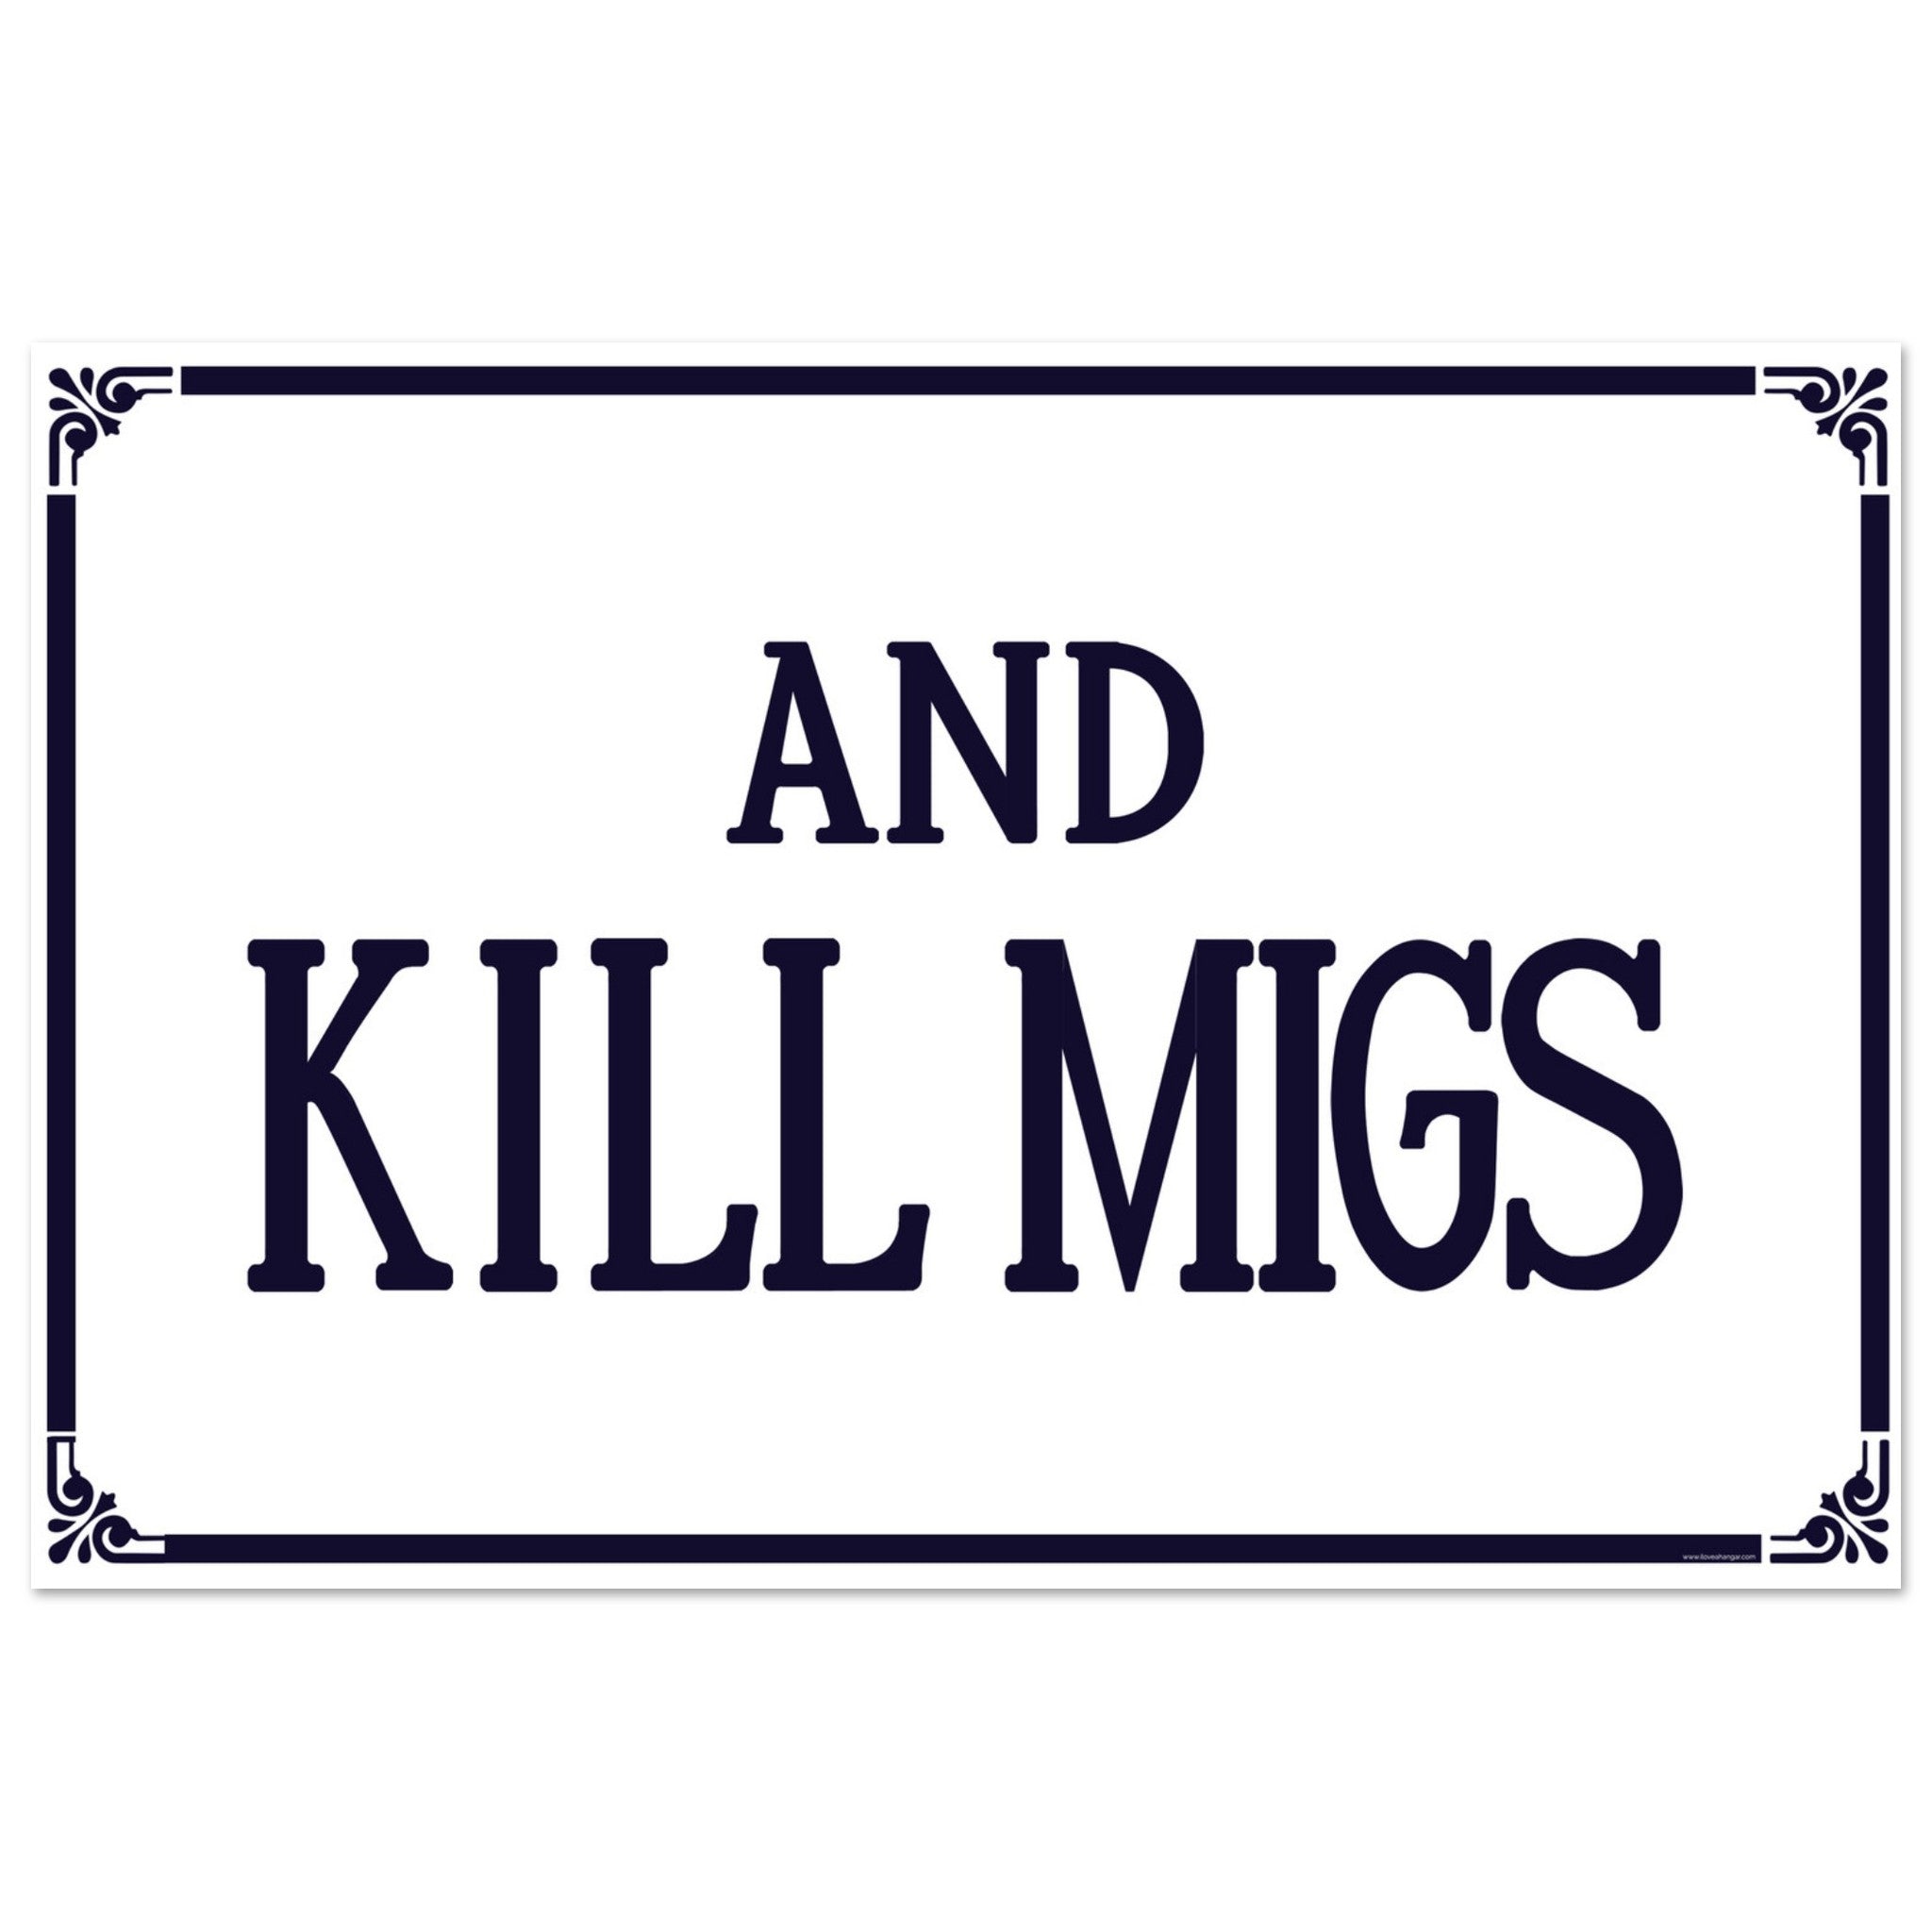 "And Kill Migs" Aluminum Print - I Love a Hangar